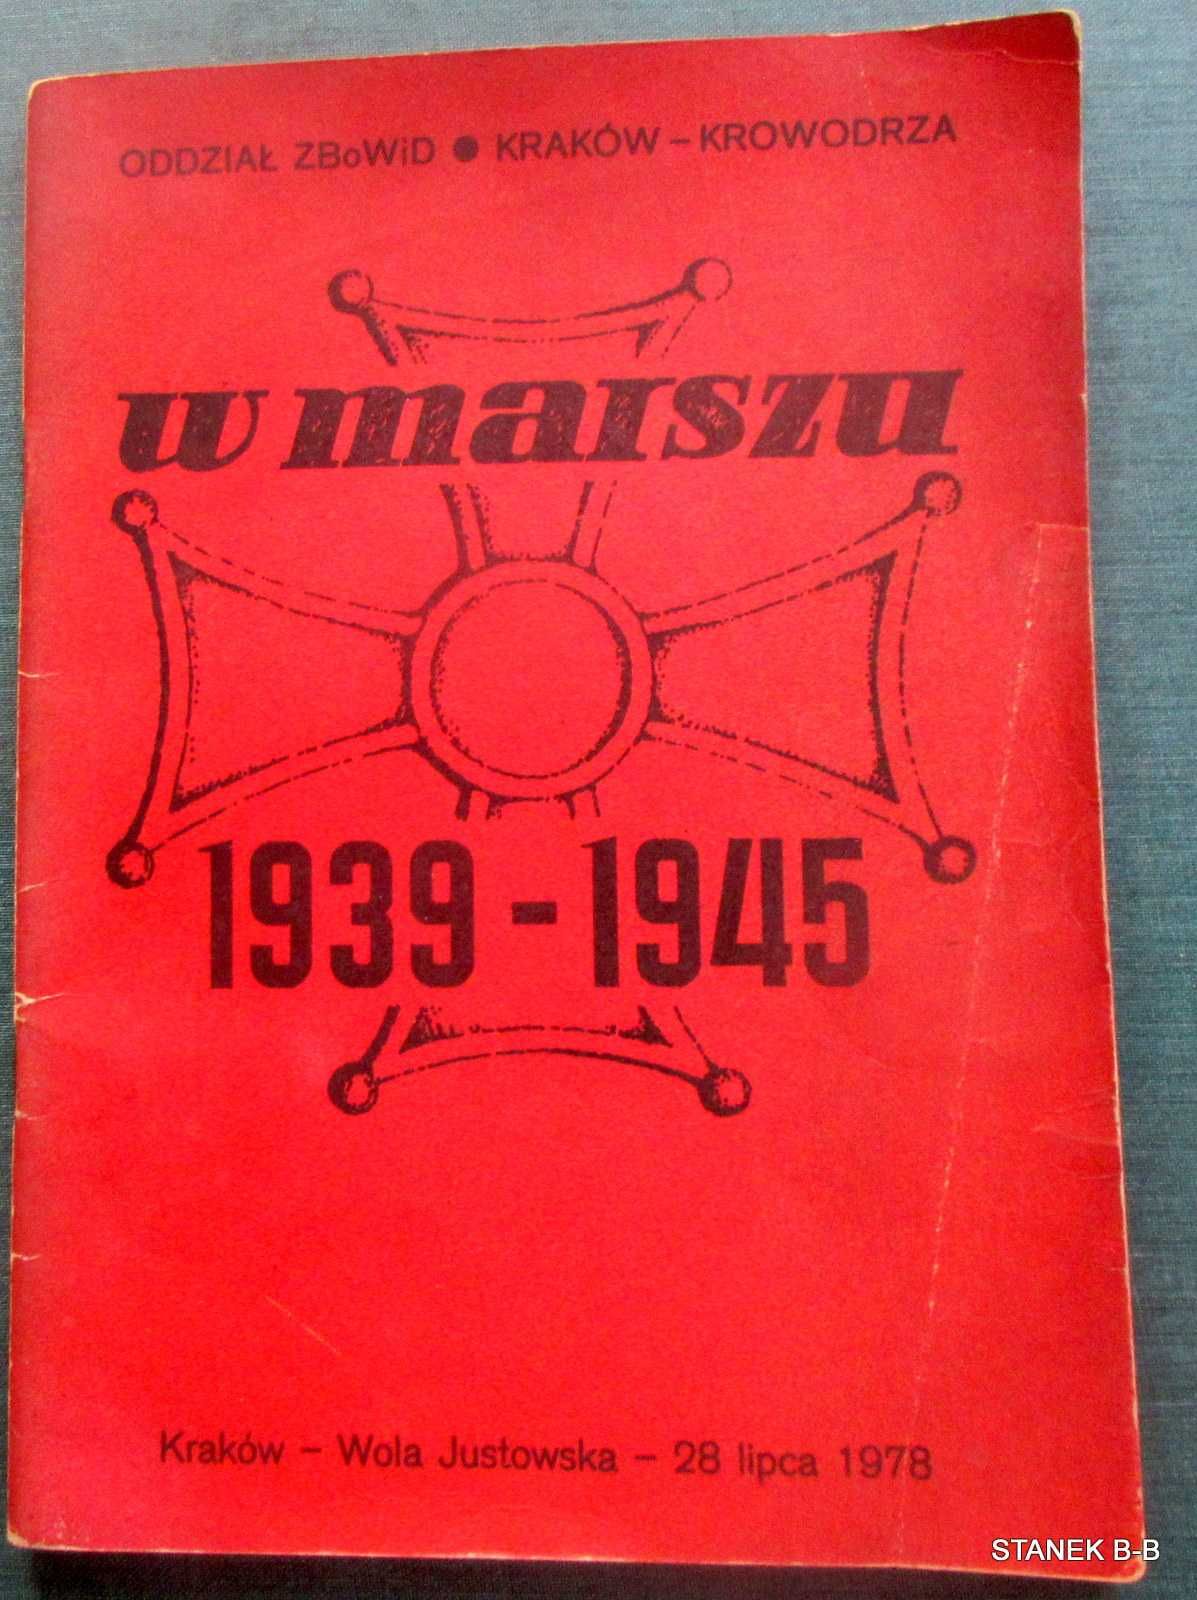 W marszu 1939 do 1945 ZBOWID Kraków 1978